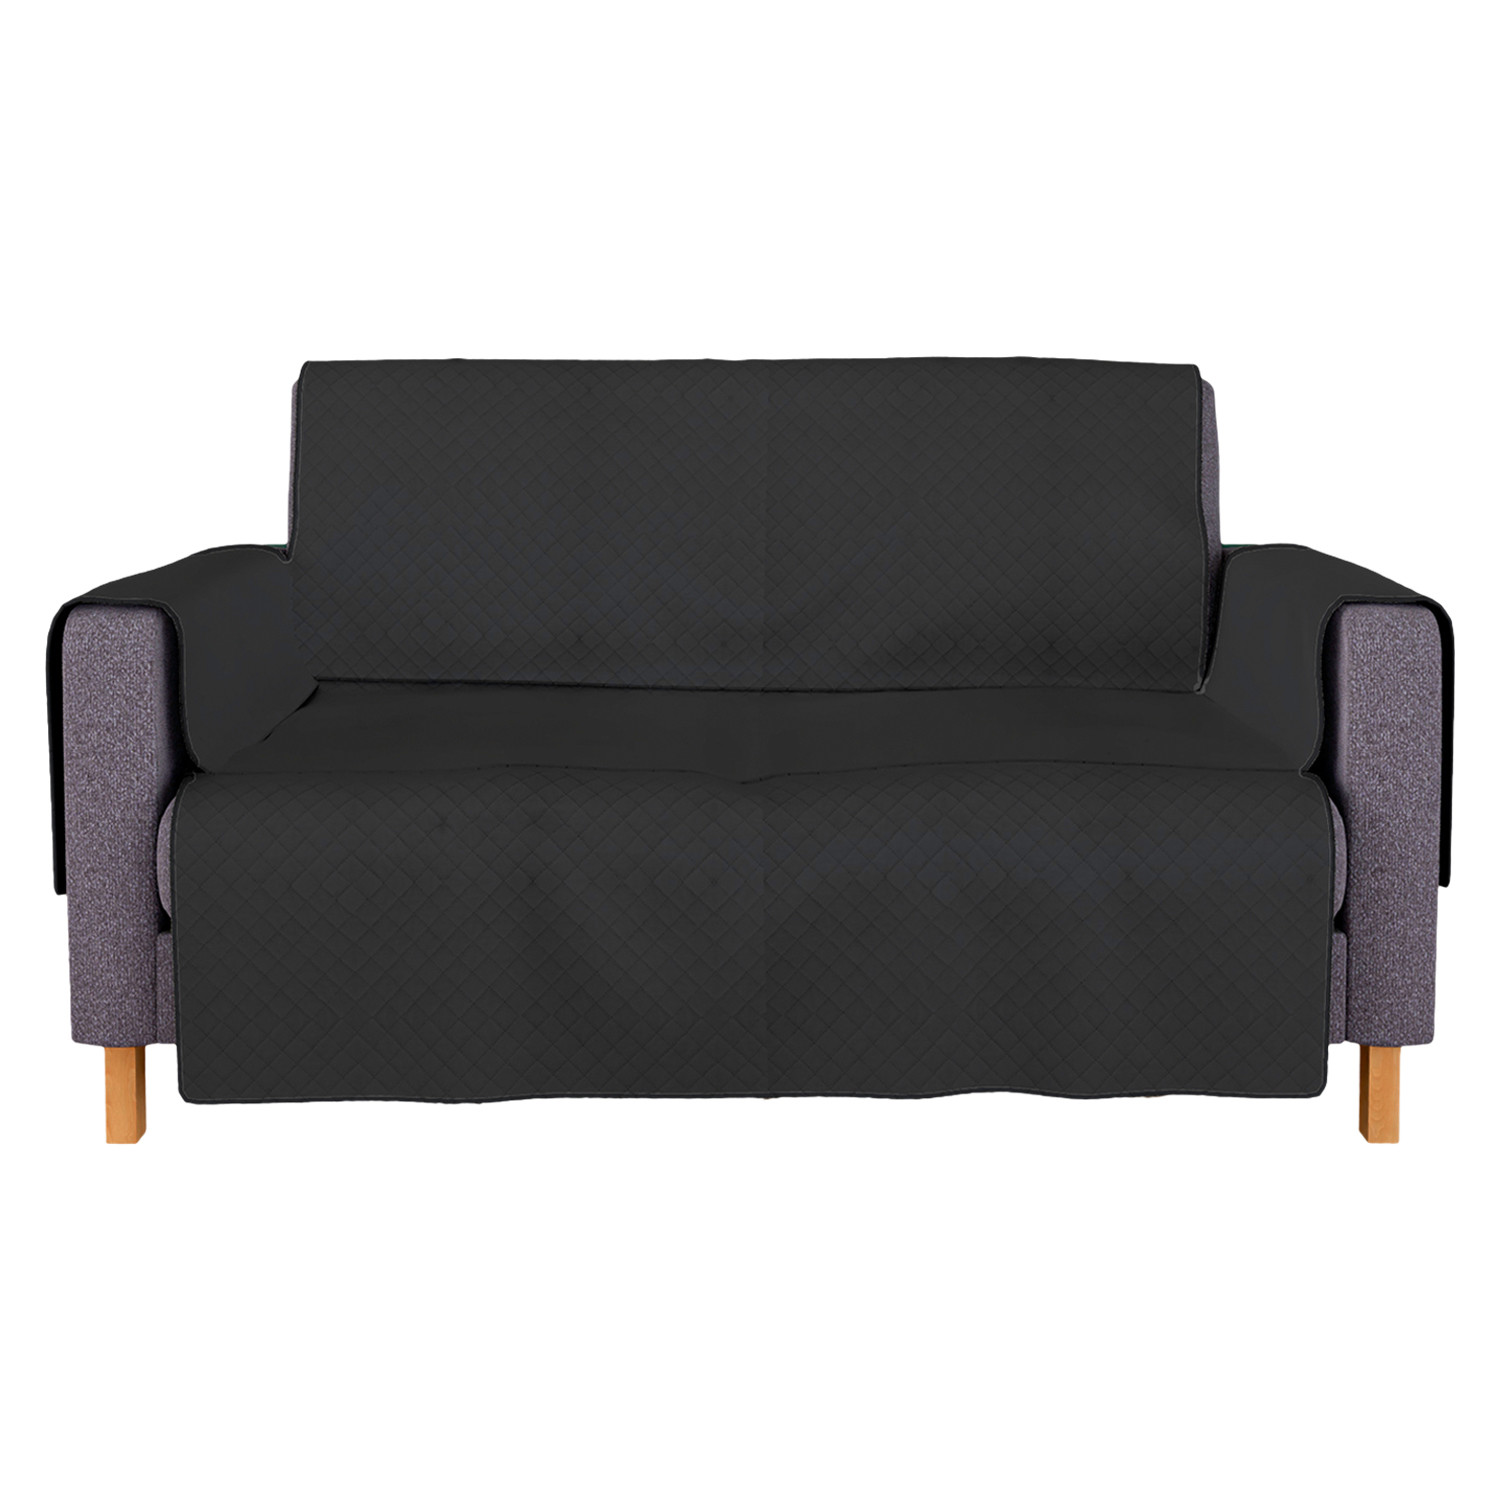 Kuber Industries Sofa Cover | Velvet Sofa Cover | 2-Seater Sofa Cover for Home Décor | 450 GSM Sofa Cover Set for Living Room | Sofa Slipcover | Couch Cover | Gray